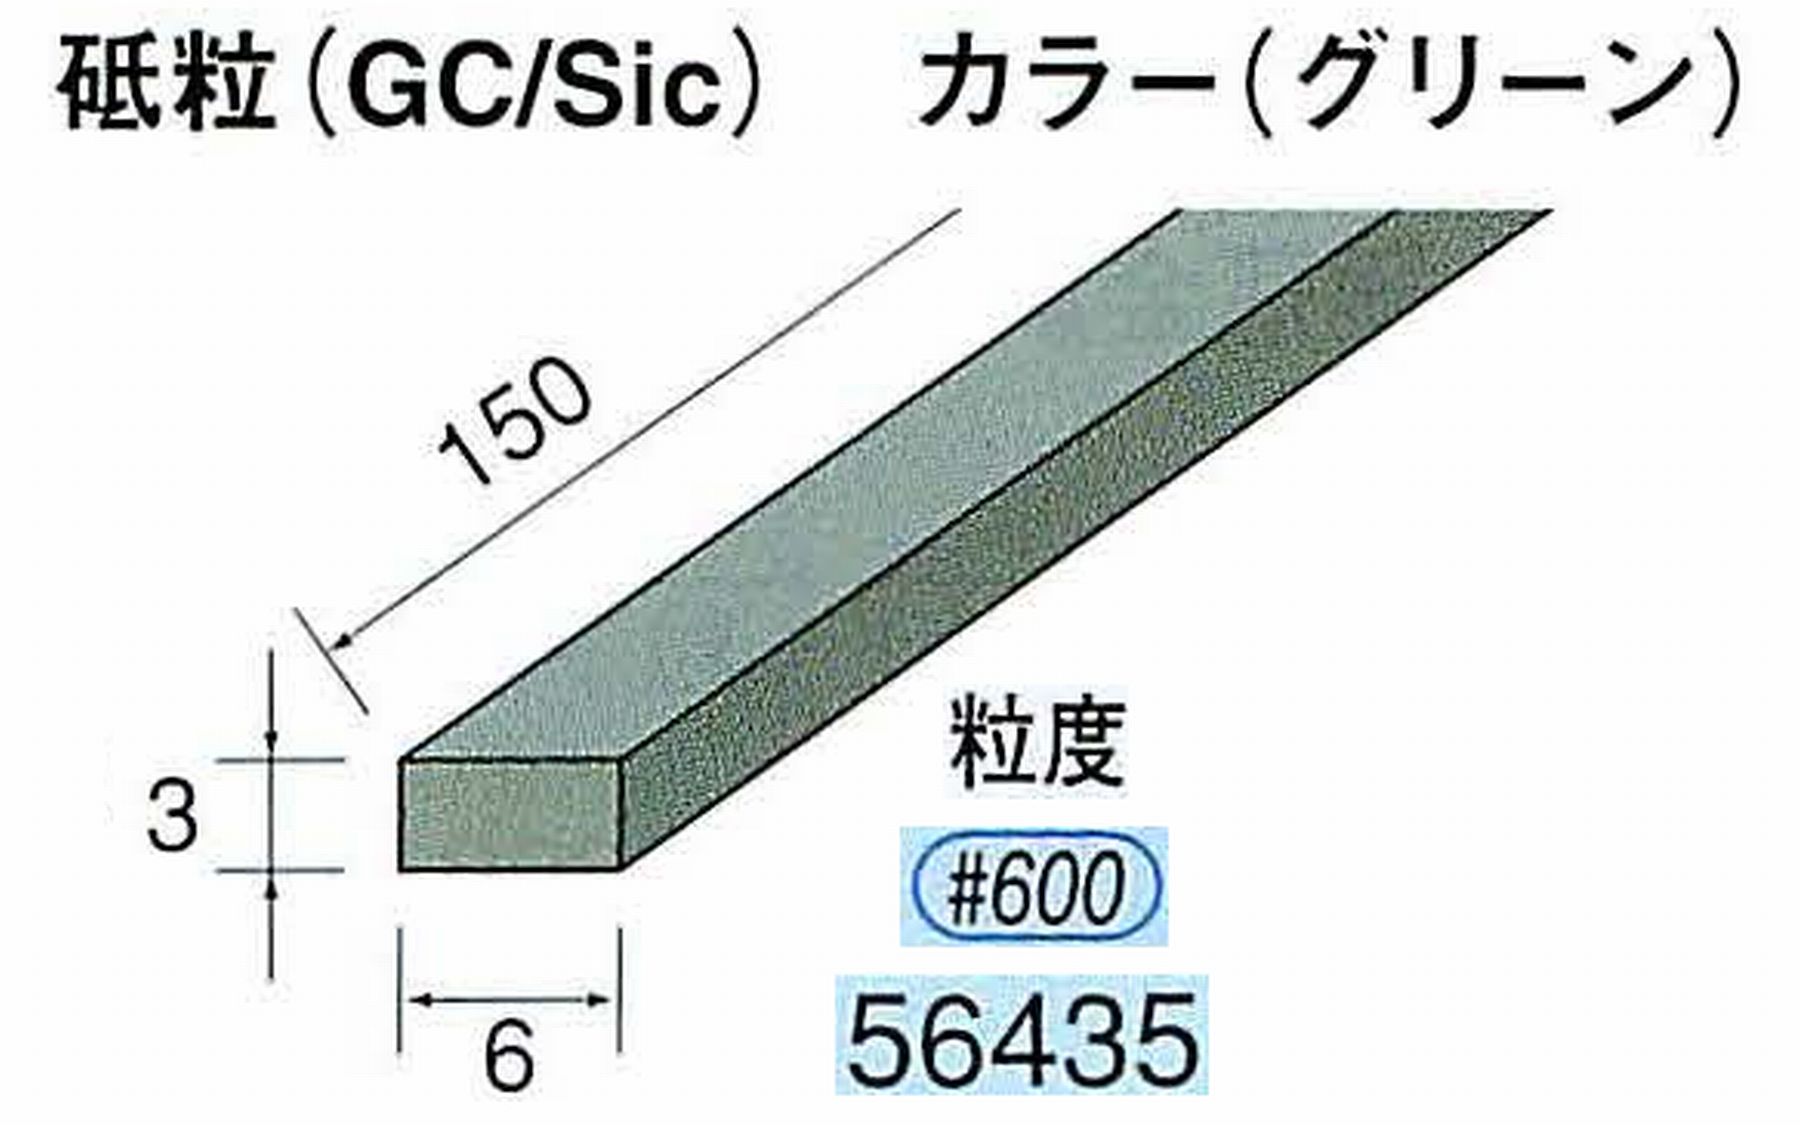 ナカニシ/NAKANISHI スティック砥石 グリーン・フィニッシュシリーズ 砥粒(GC/Sic) 56435